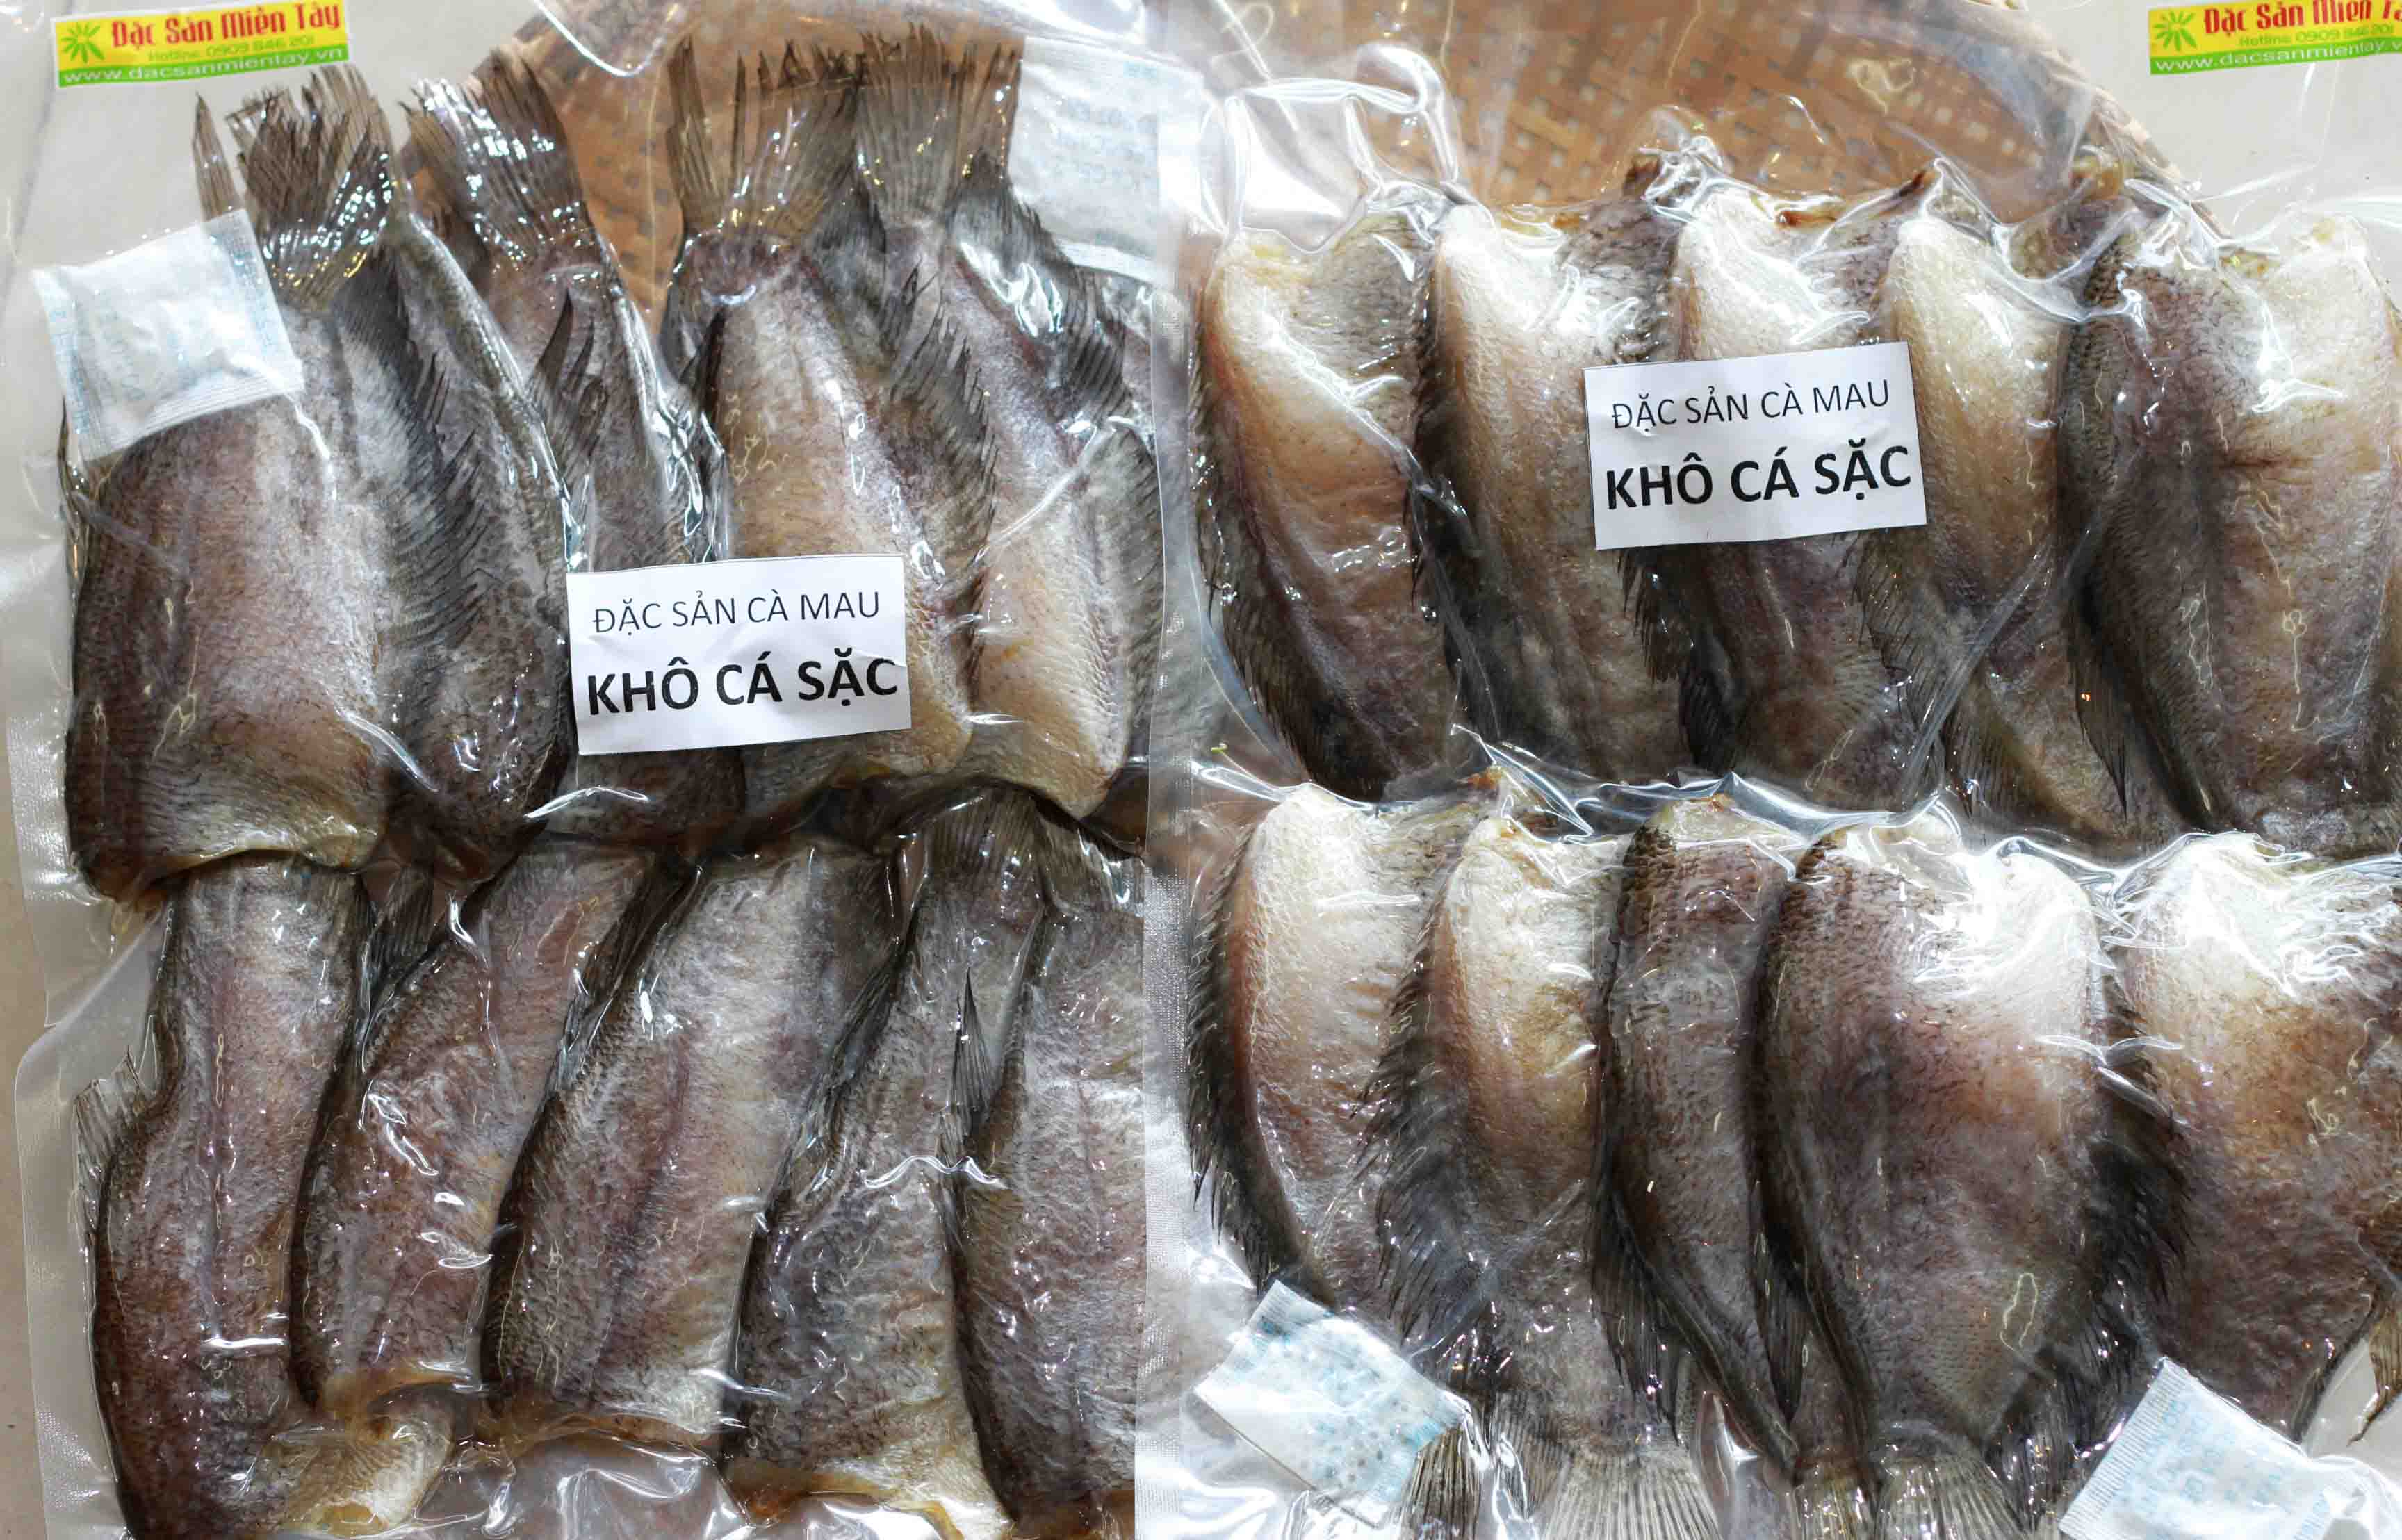 Vận chuyển các loại khô cá sặc từ Sài Gòn đi Thụy Điển